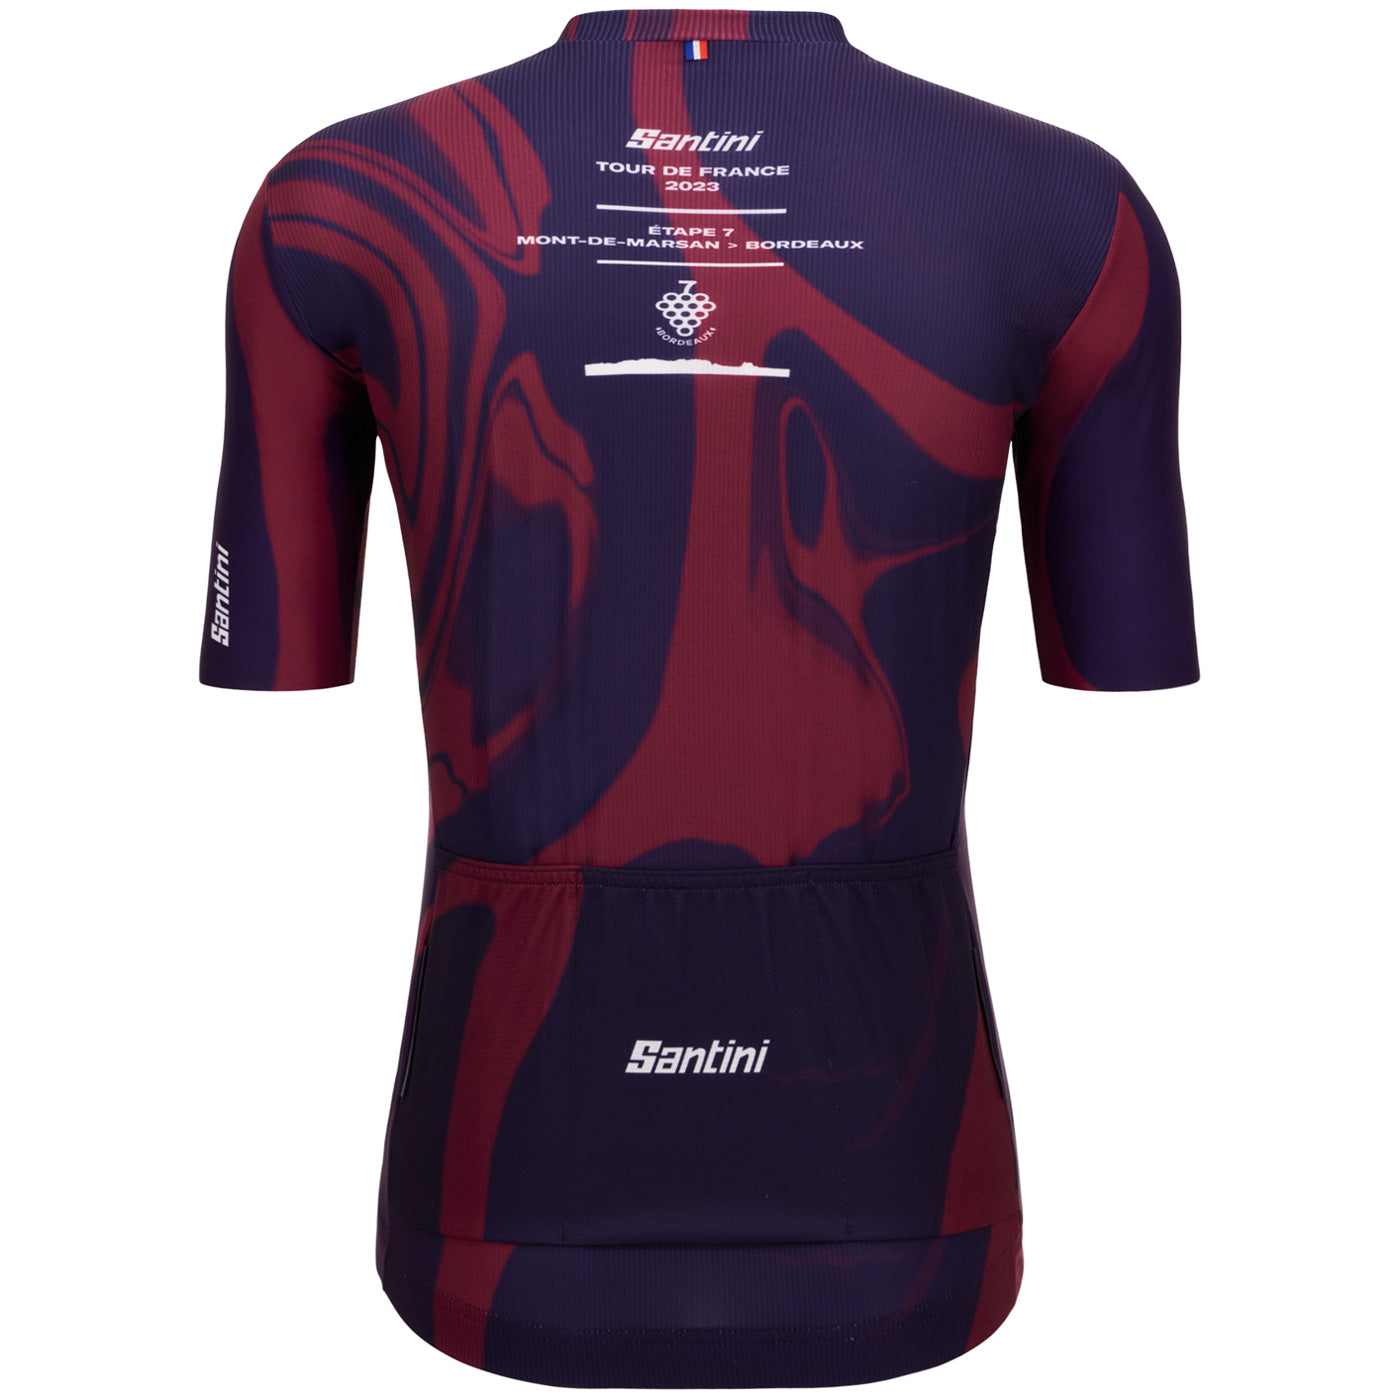 Tour de France trikot - Bordeaux